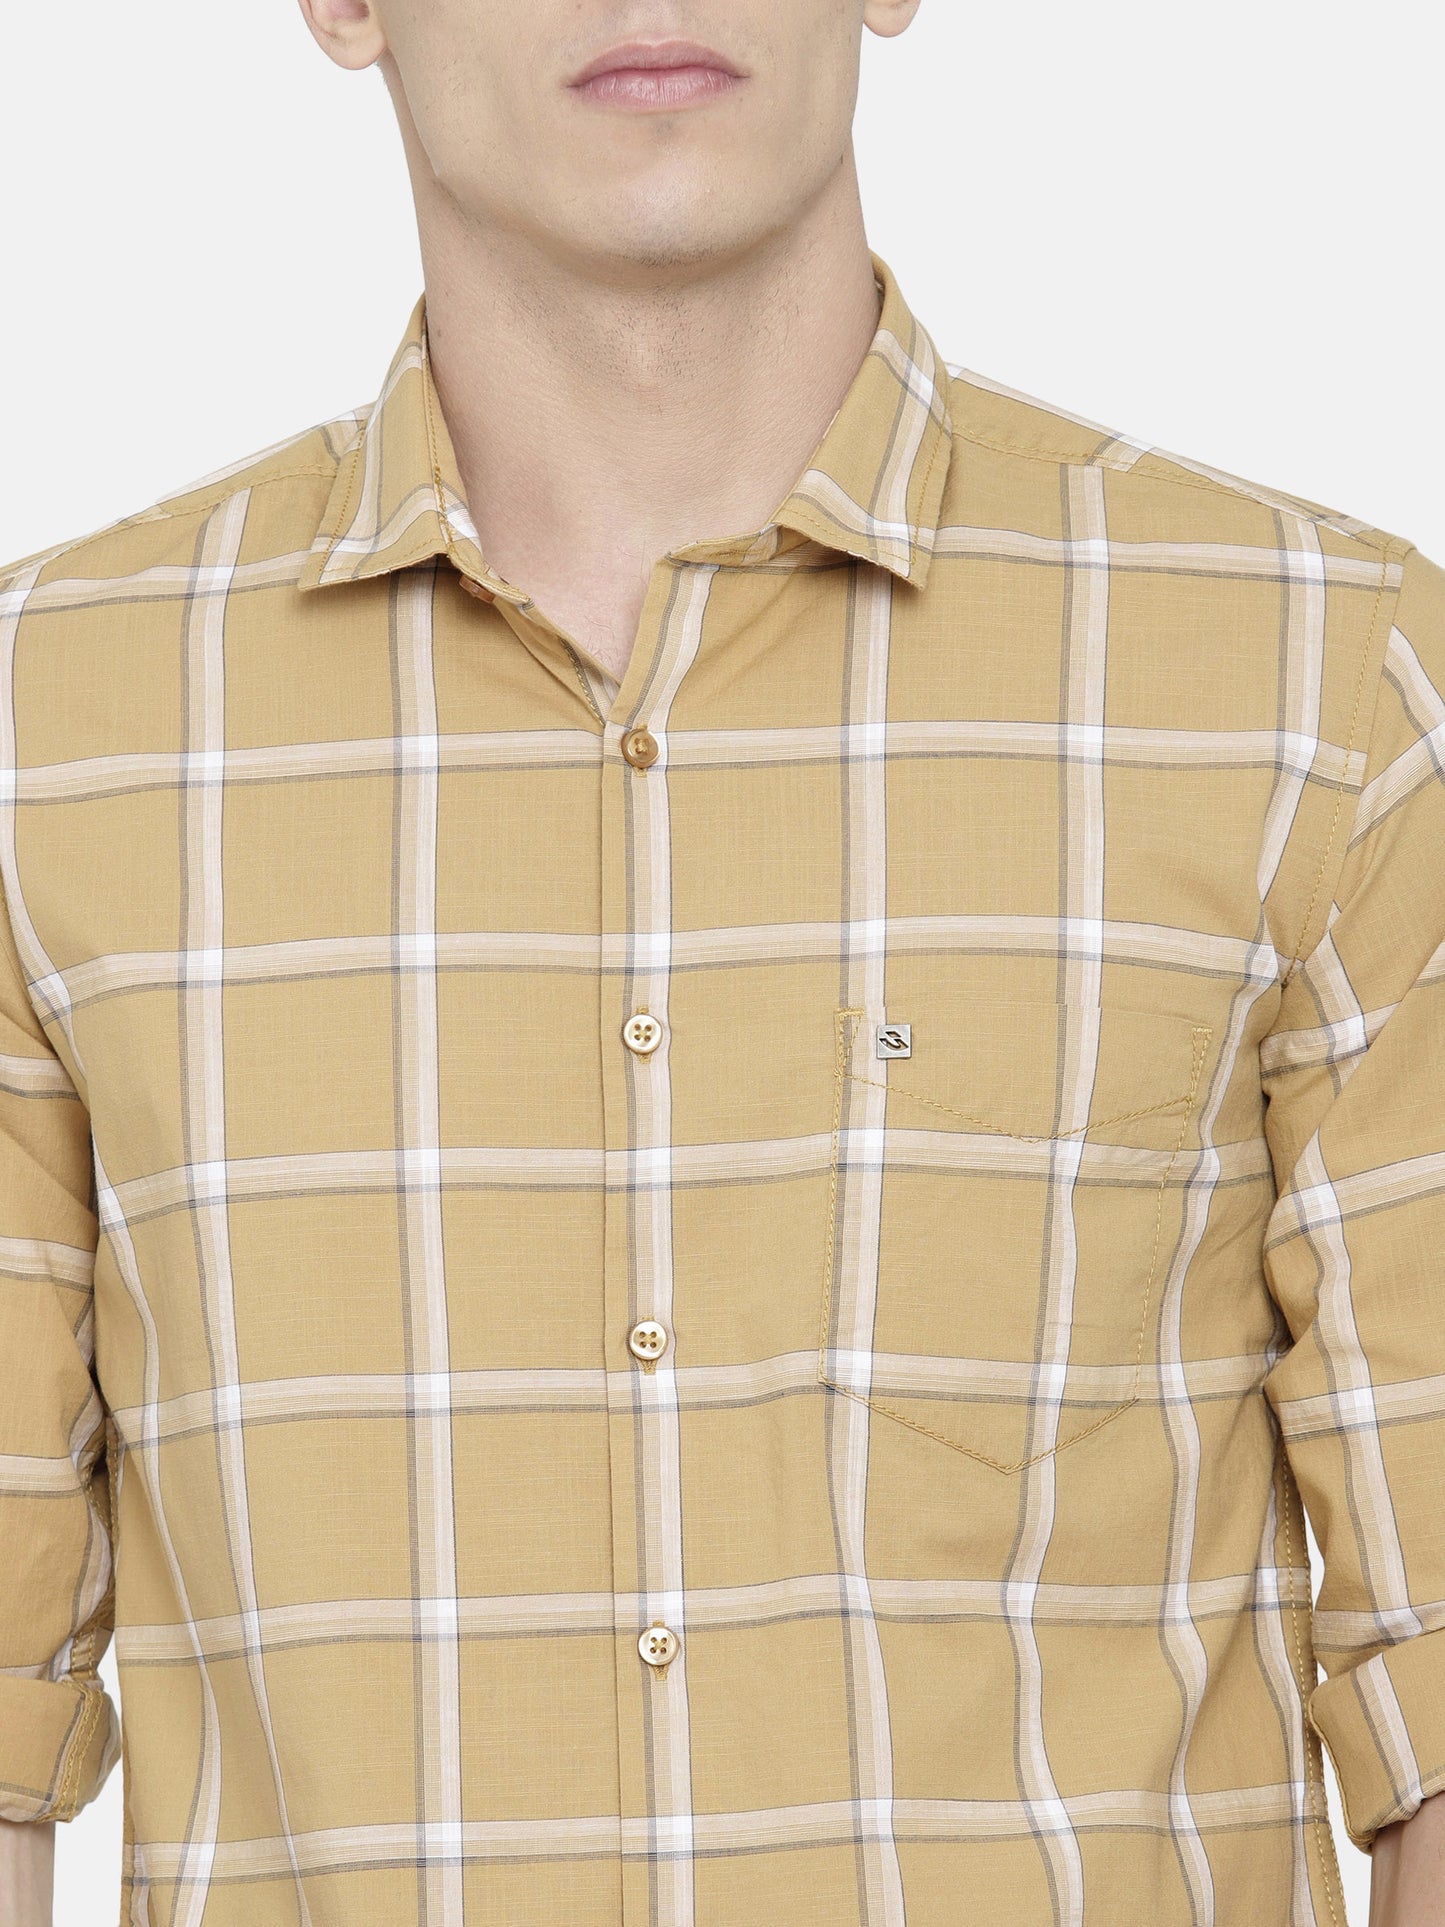 Mustard Yellow/ Brown Checkered Shirt